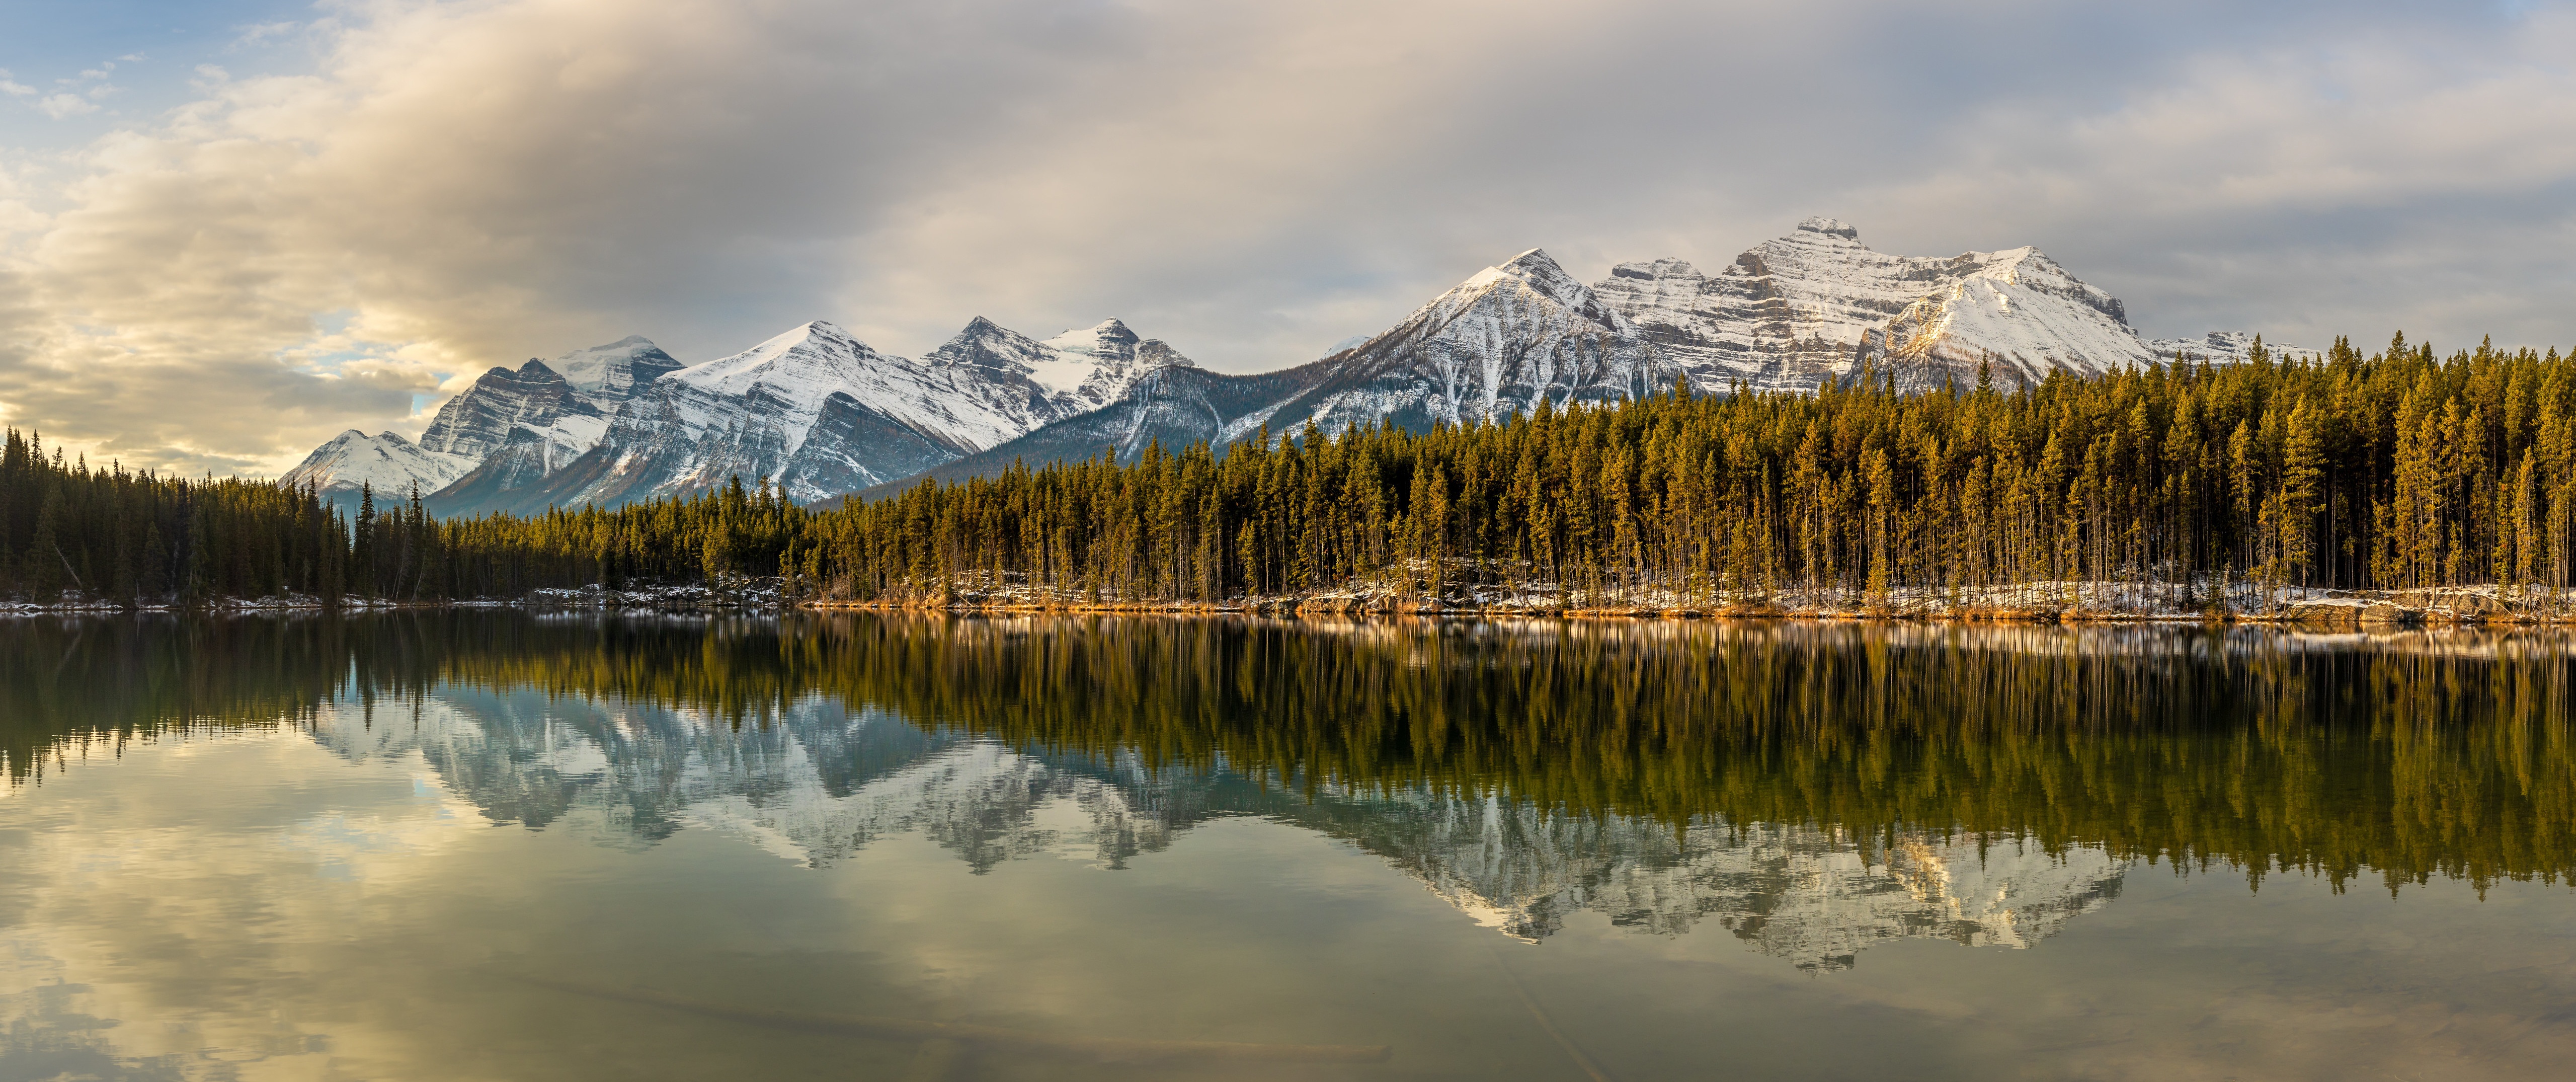 Descarga gratuita de fondo de pantalla para móvil de Naturaleza, Montaña, Lago, Canadá, Bosque, Parque Nacional, Parque Nacional Banff, Tierra/naturaleza, Reflejo.